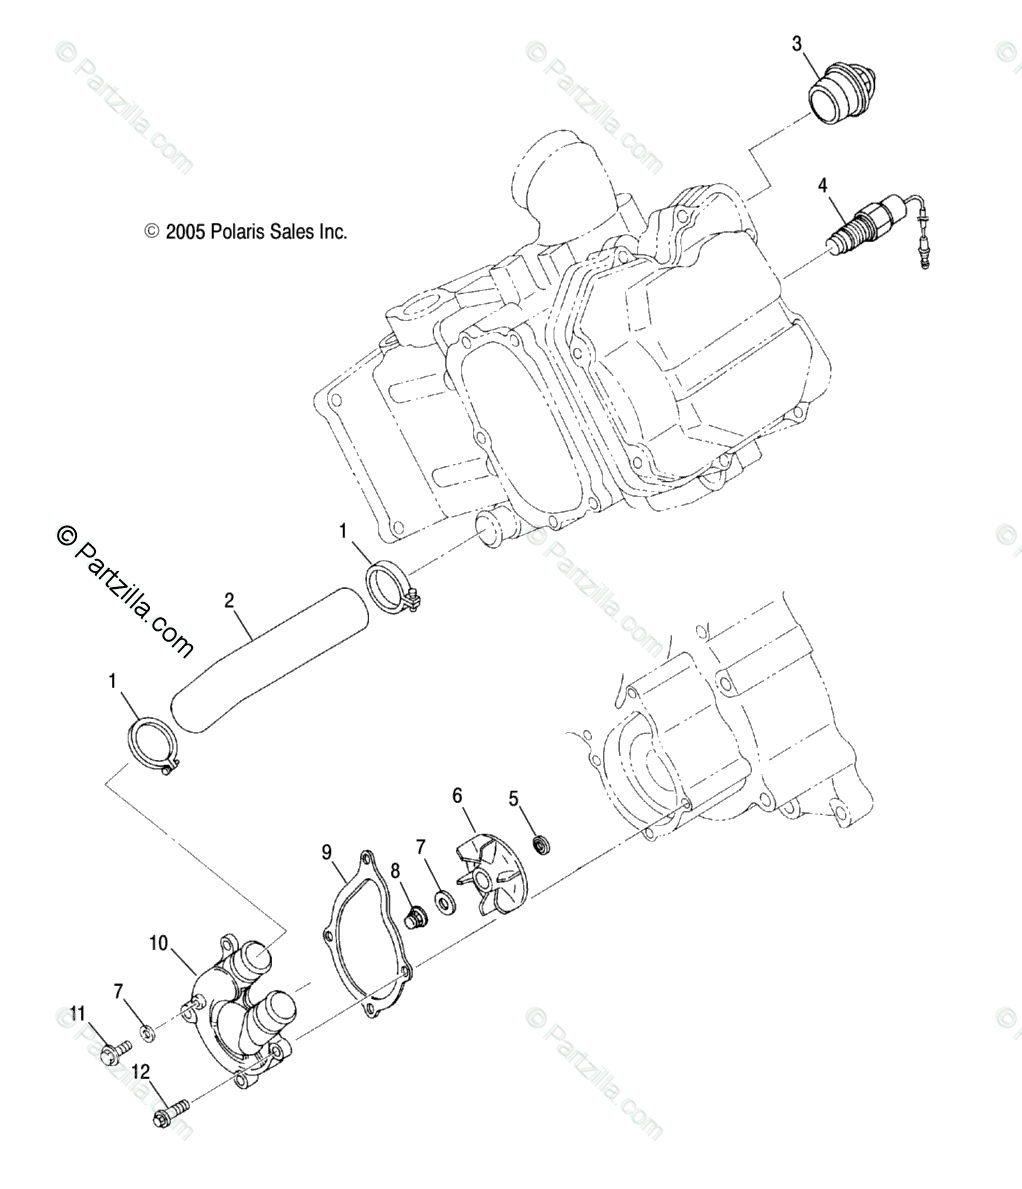 2005 Polaris Sportsman 400 Parts Diagram  U2013 Kayamotor Co